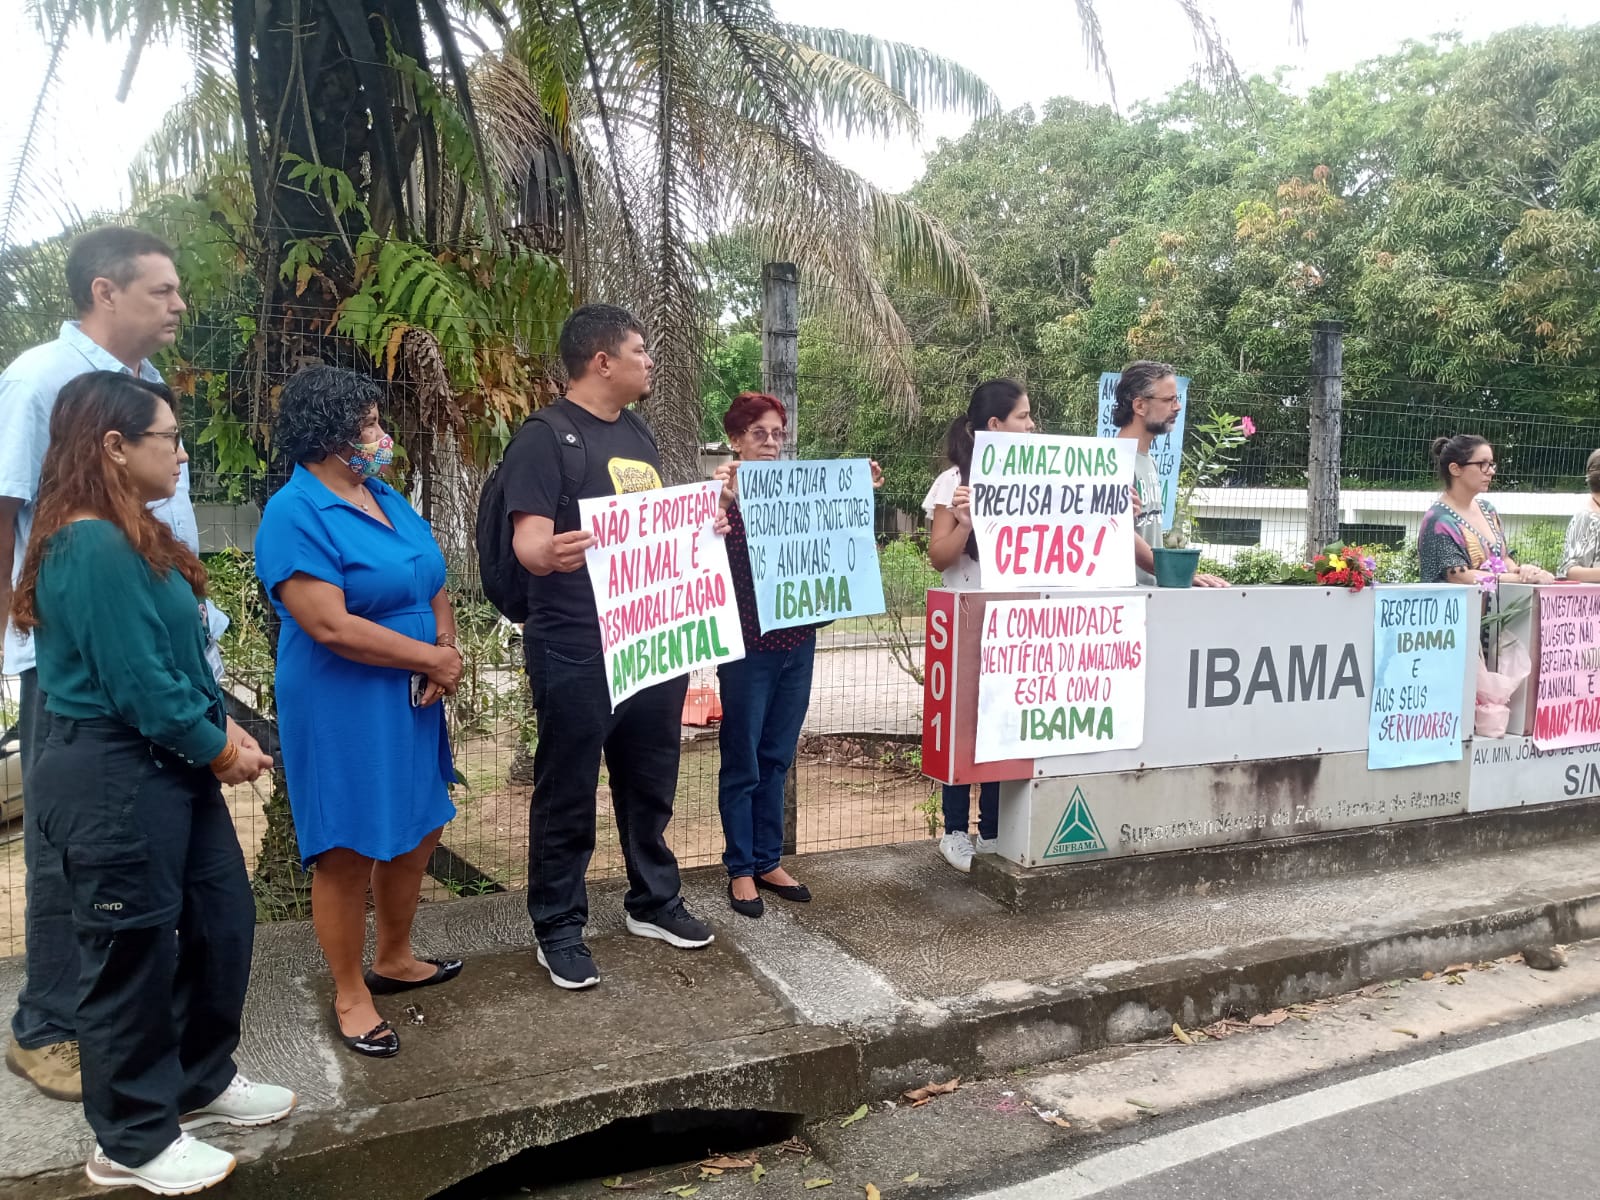 Manifestantes se reuniram em Manaus na manhã desta terça-feira (2/5) em um ato a favor do Ibama, após ataques contra a instituição.